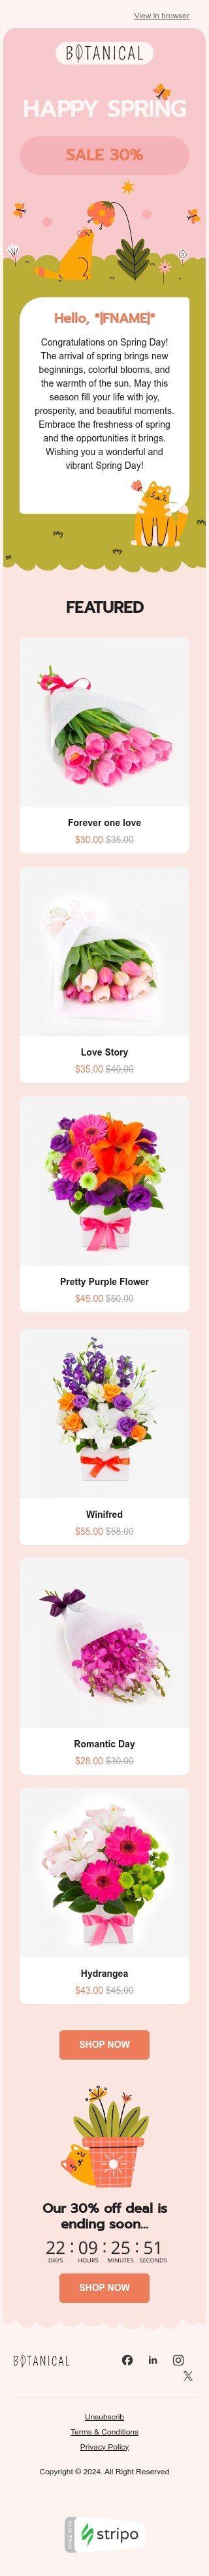 Plantilla de correo electrónico «Flores de primavera» de primavera para la industria de regalos y flores Vista de móvil